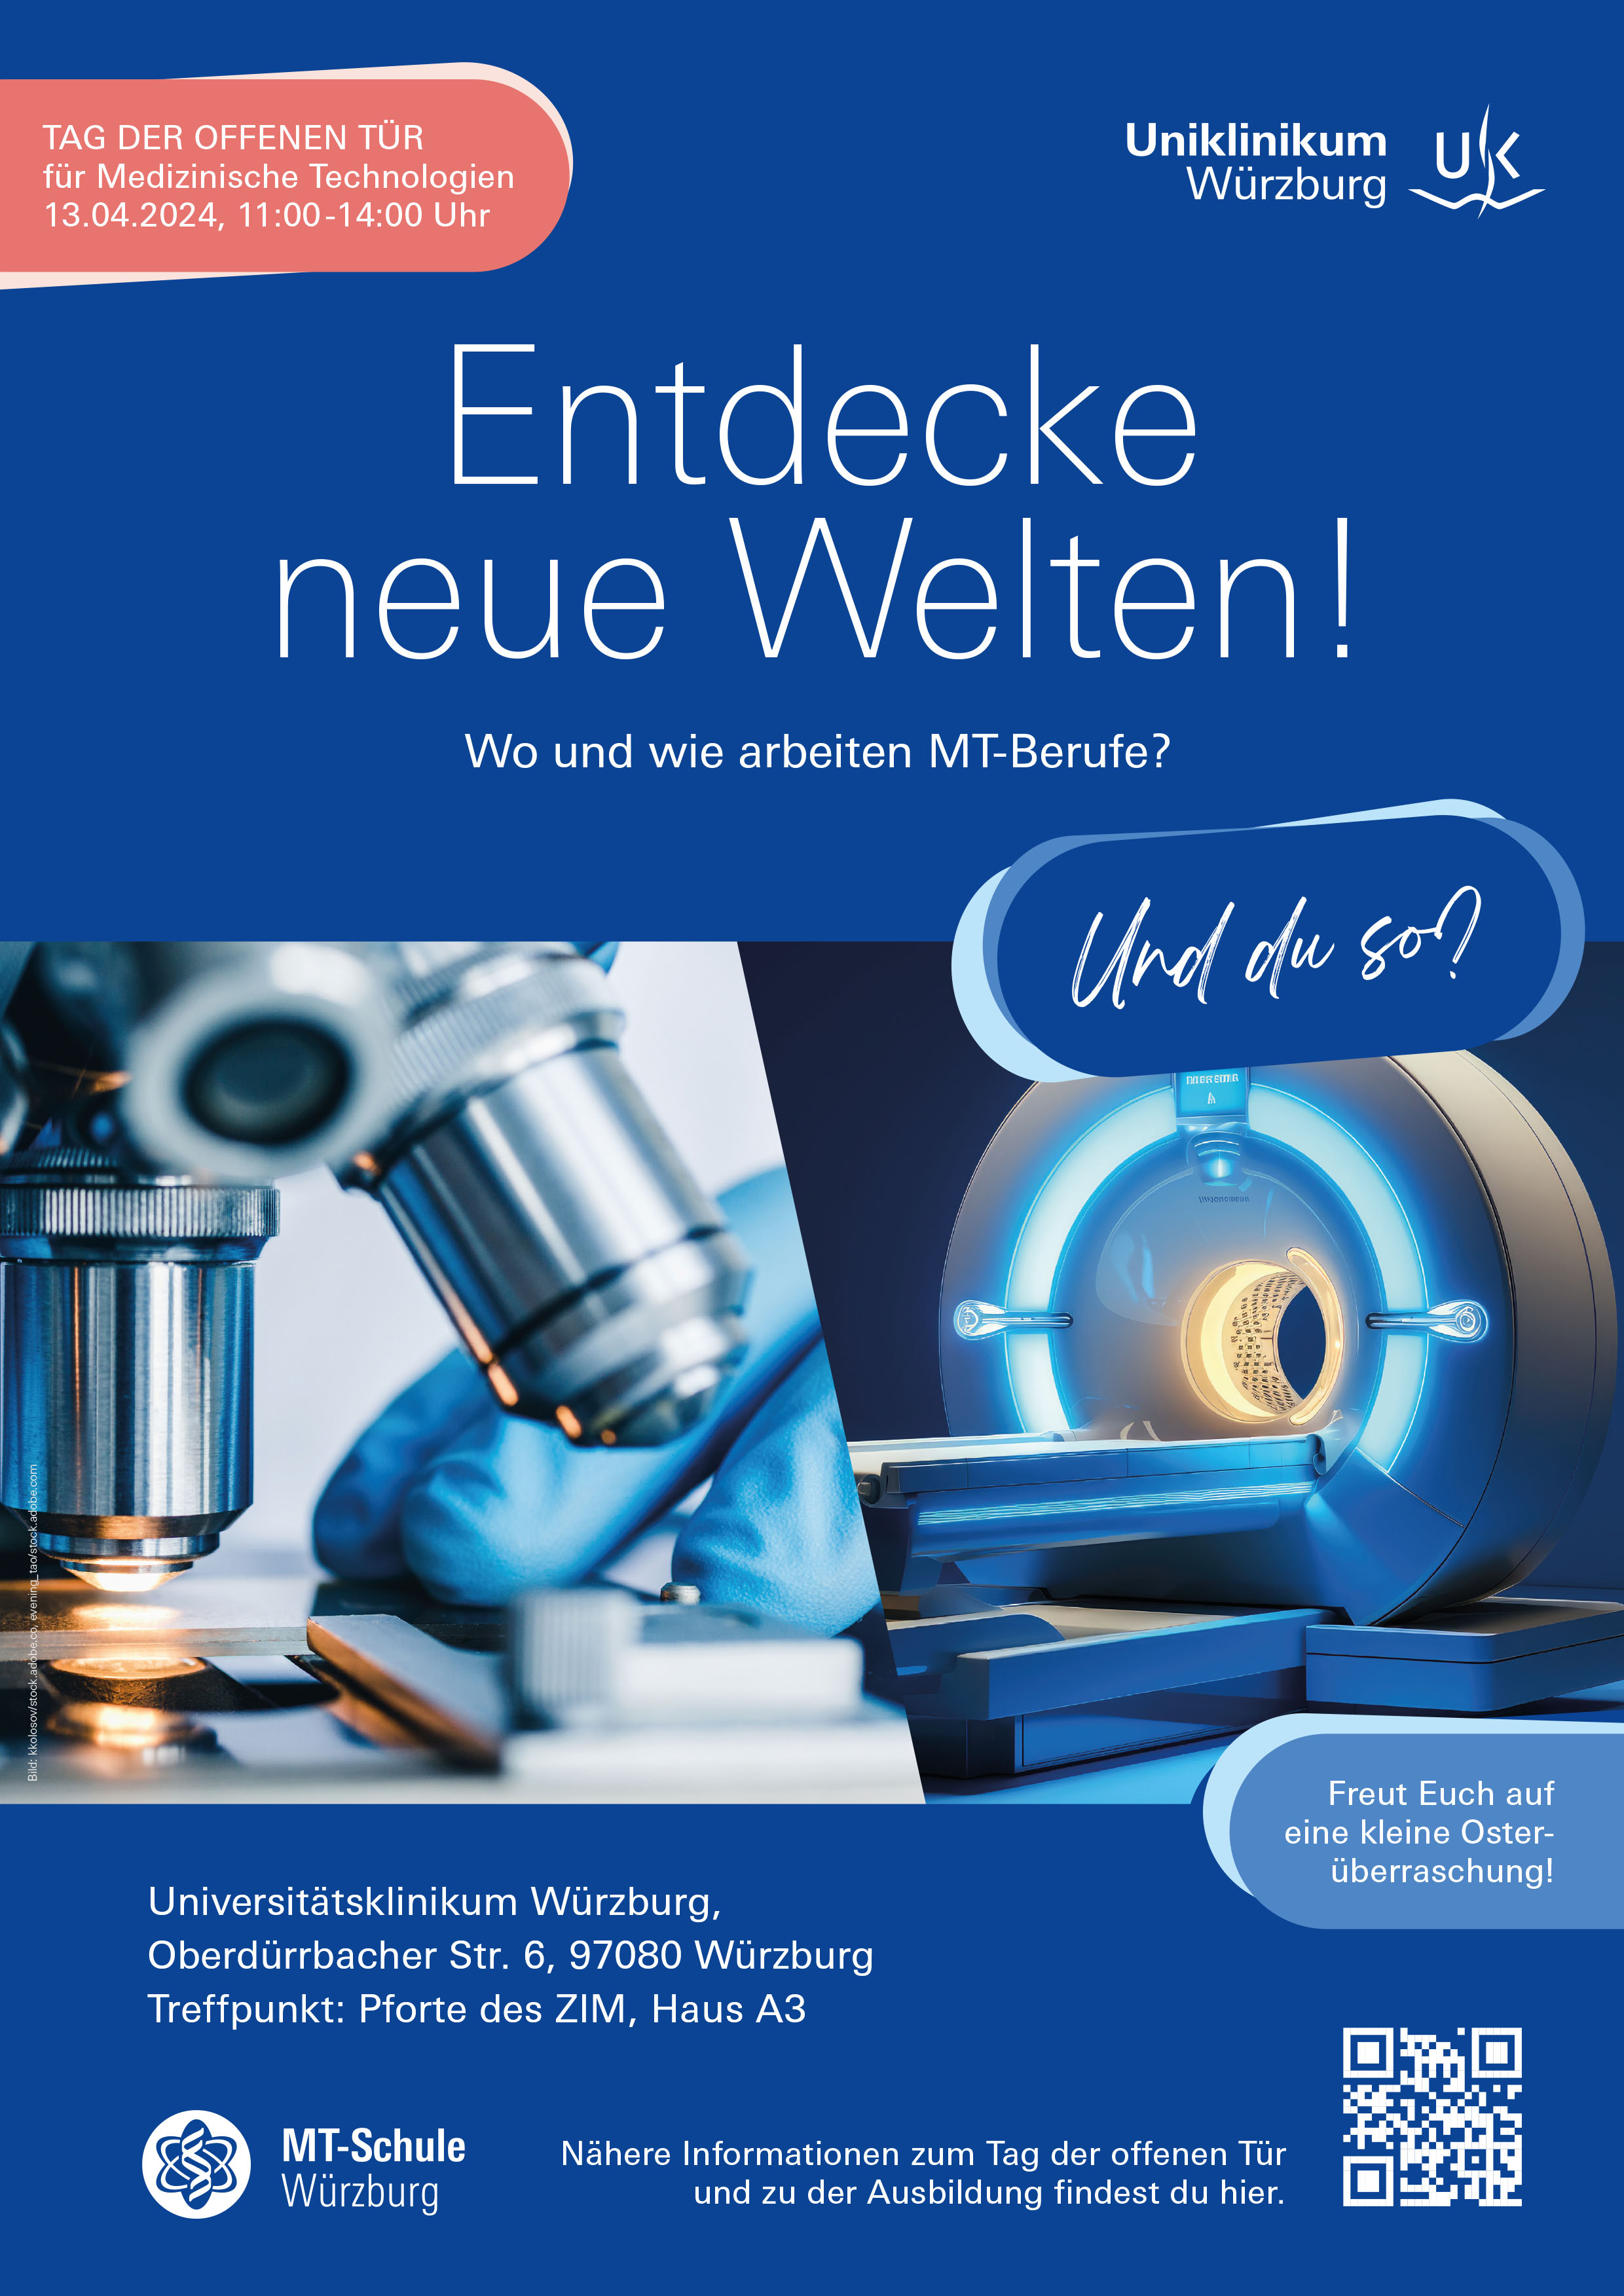 Poster zur Veranstaltung „Tag der offenen Tür für Medizinische Technologien“ am 13. April 2024 am Uniklinikum Würzburg. © UKW